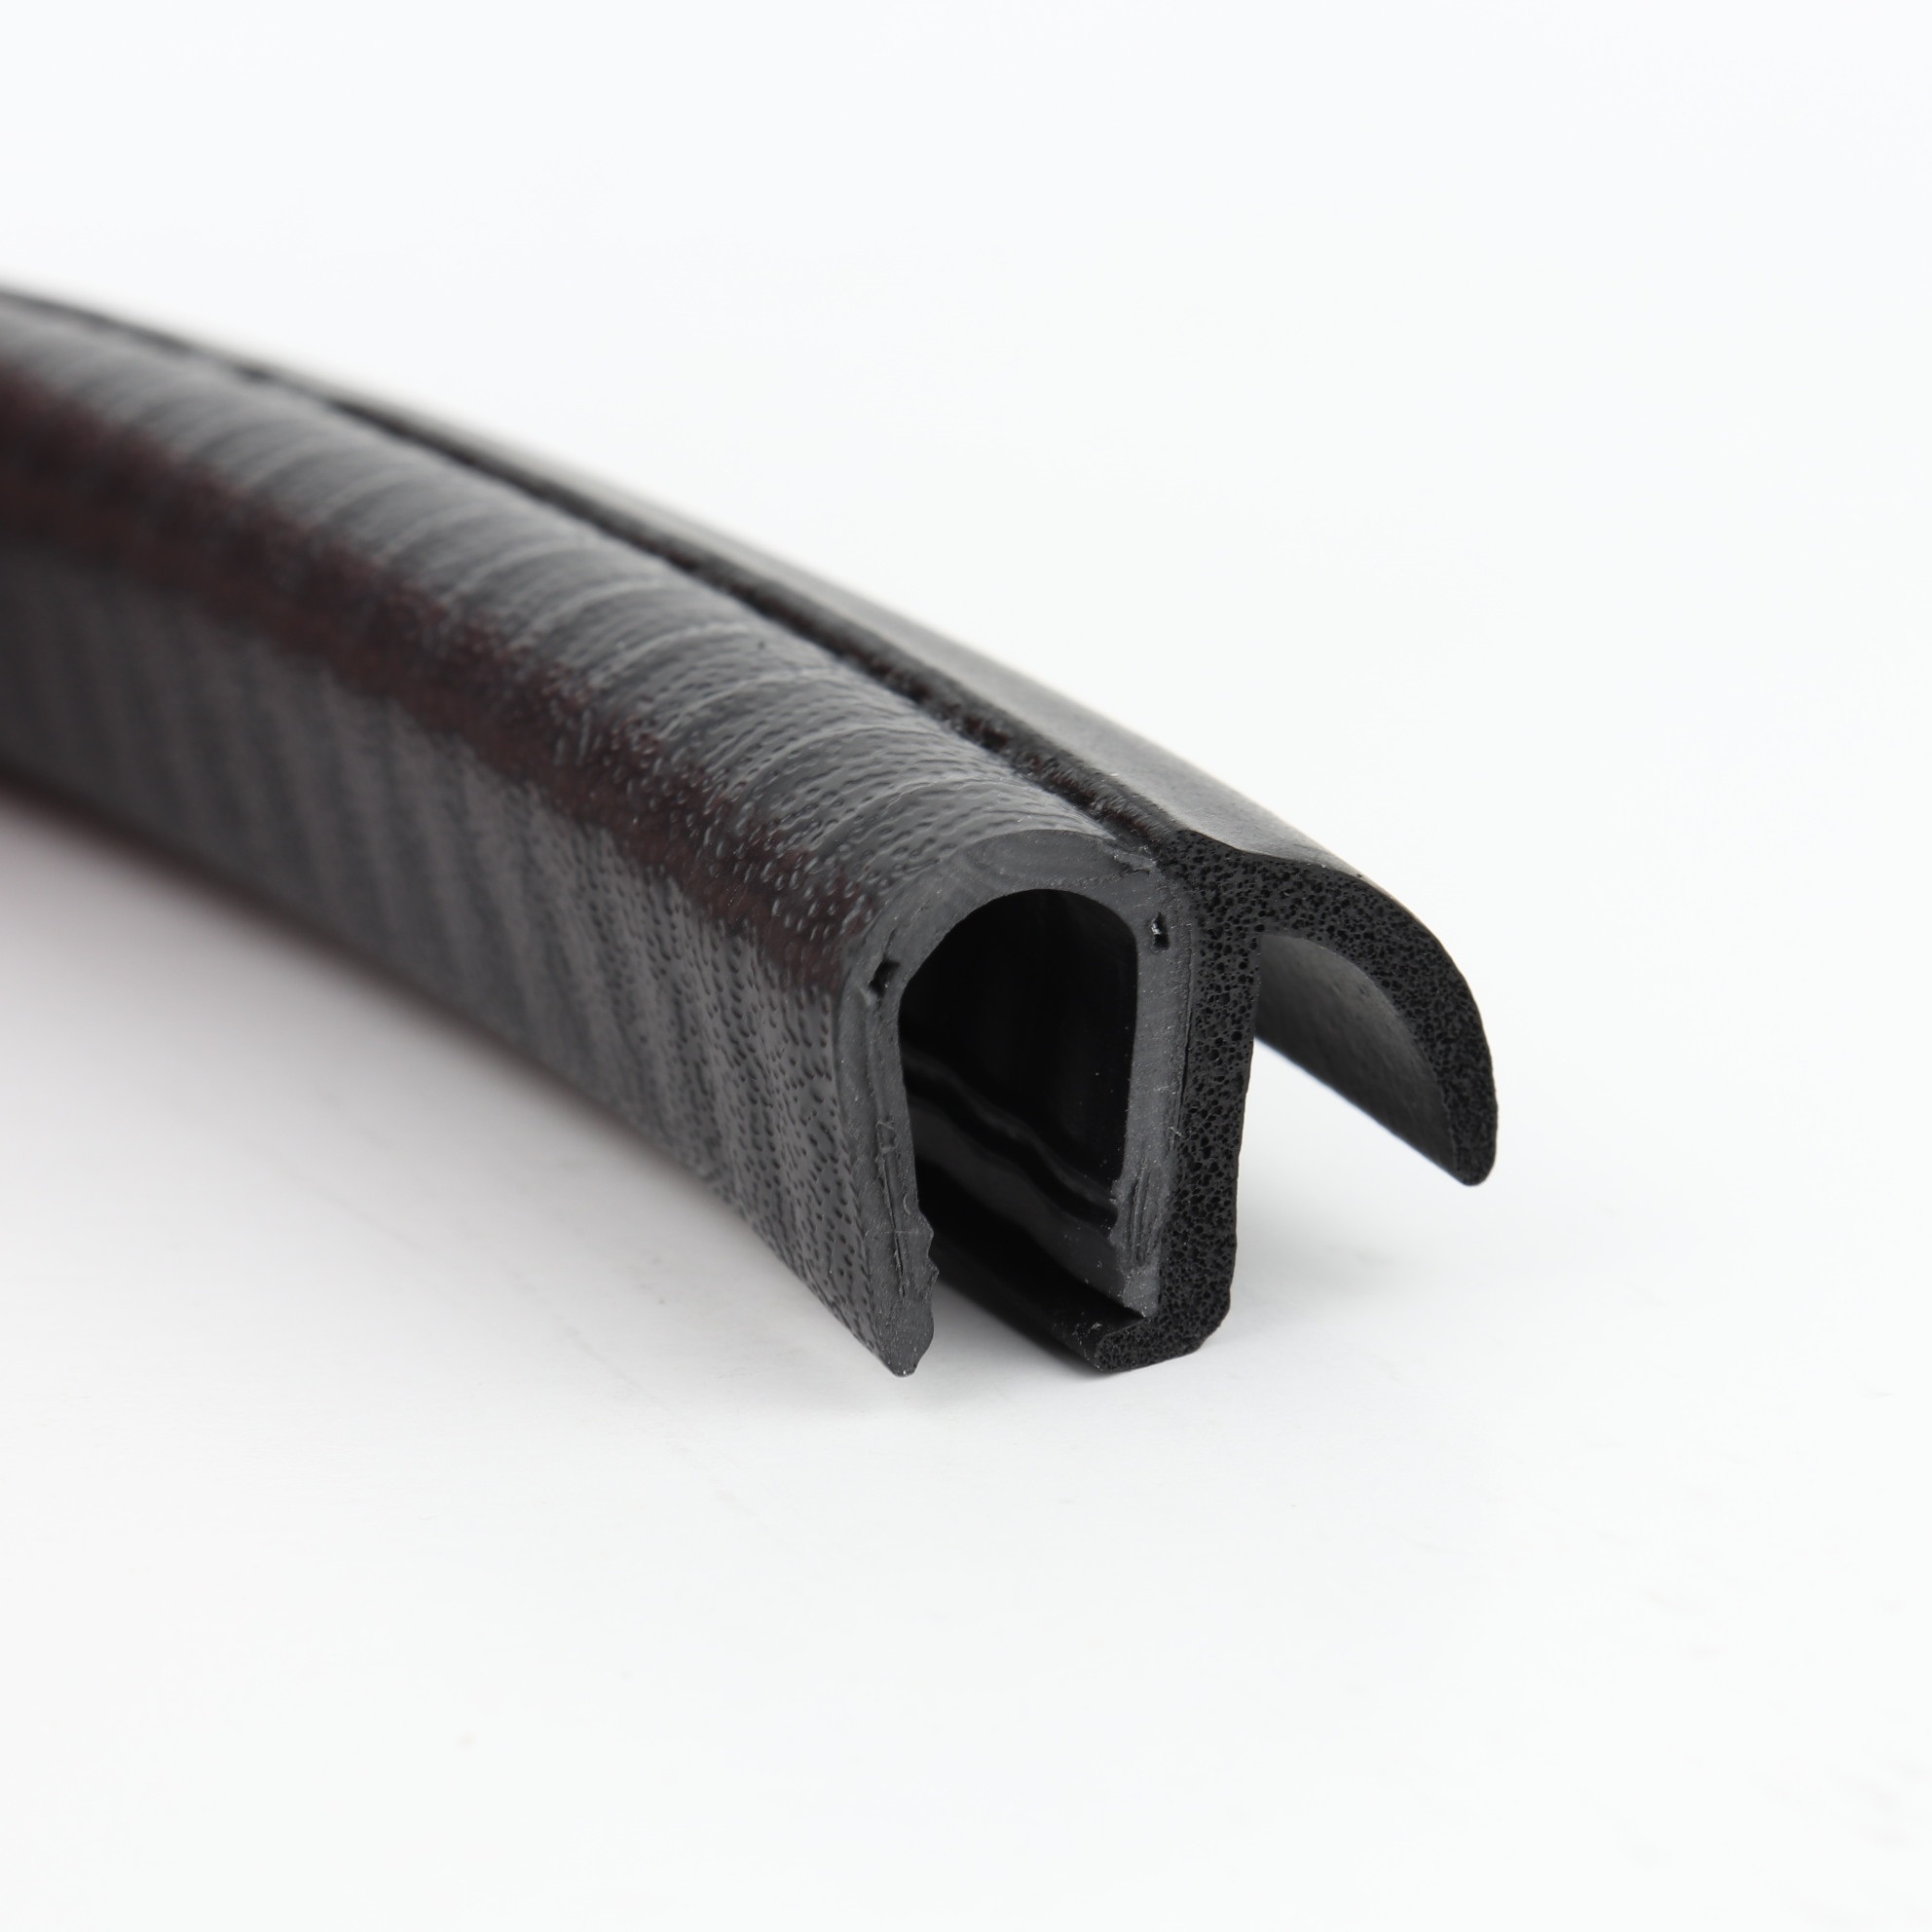 Kantenschutz-Dichtprofil - PVC/EPDM - mit Dichtlippe seitlich - Klemmbereich 6-8mm